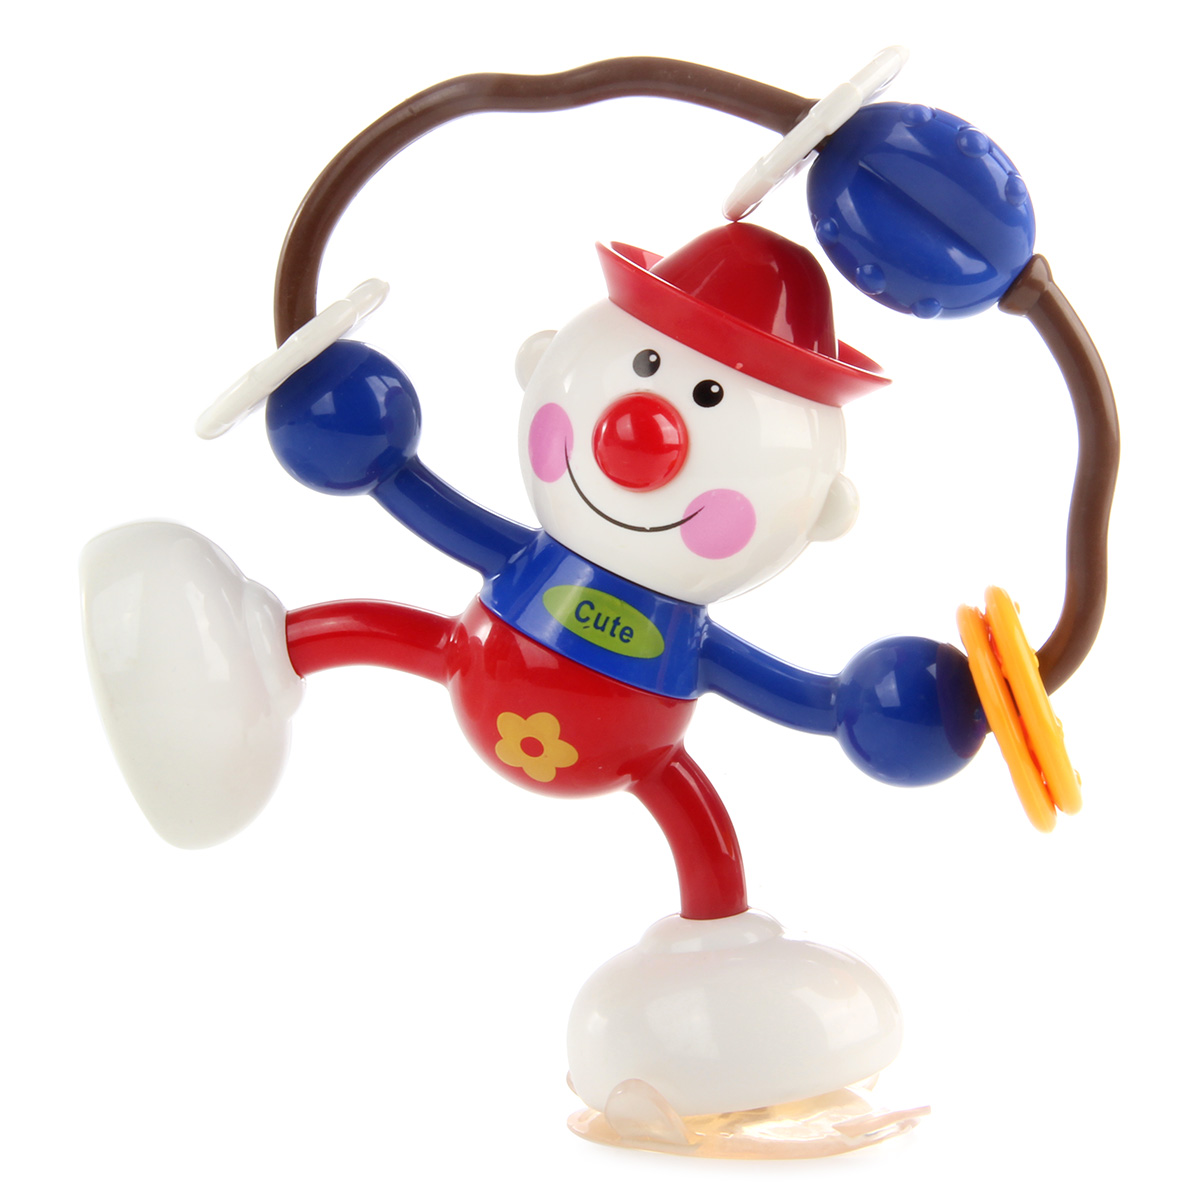 Развивающая игрушка Ути Пути клоун крутилка - фото 1